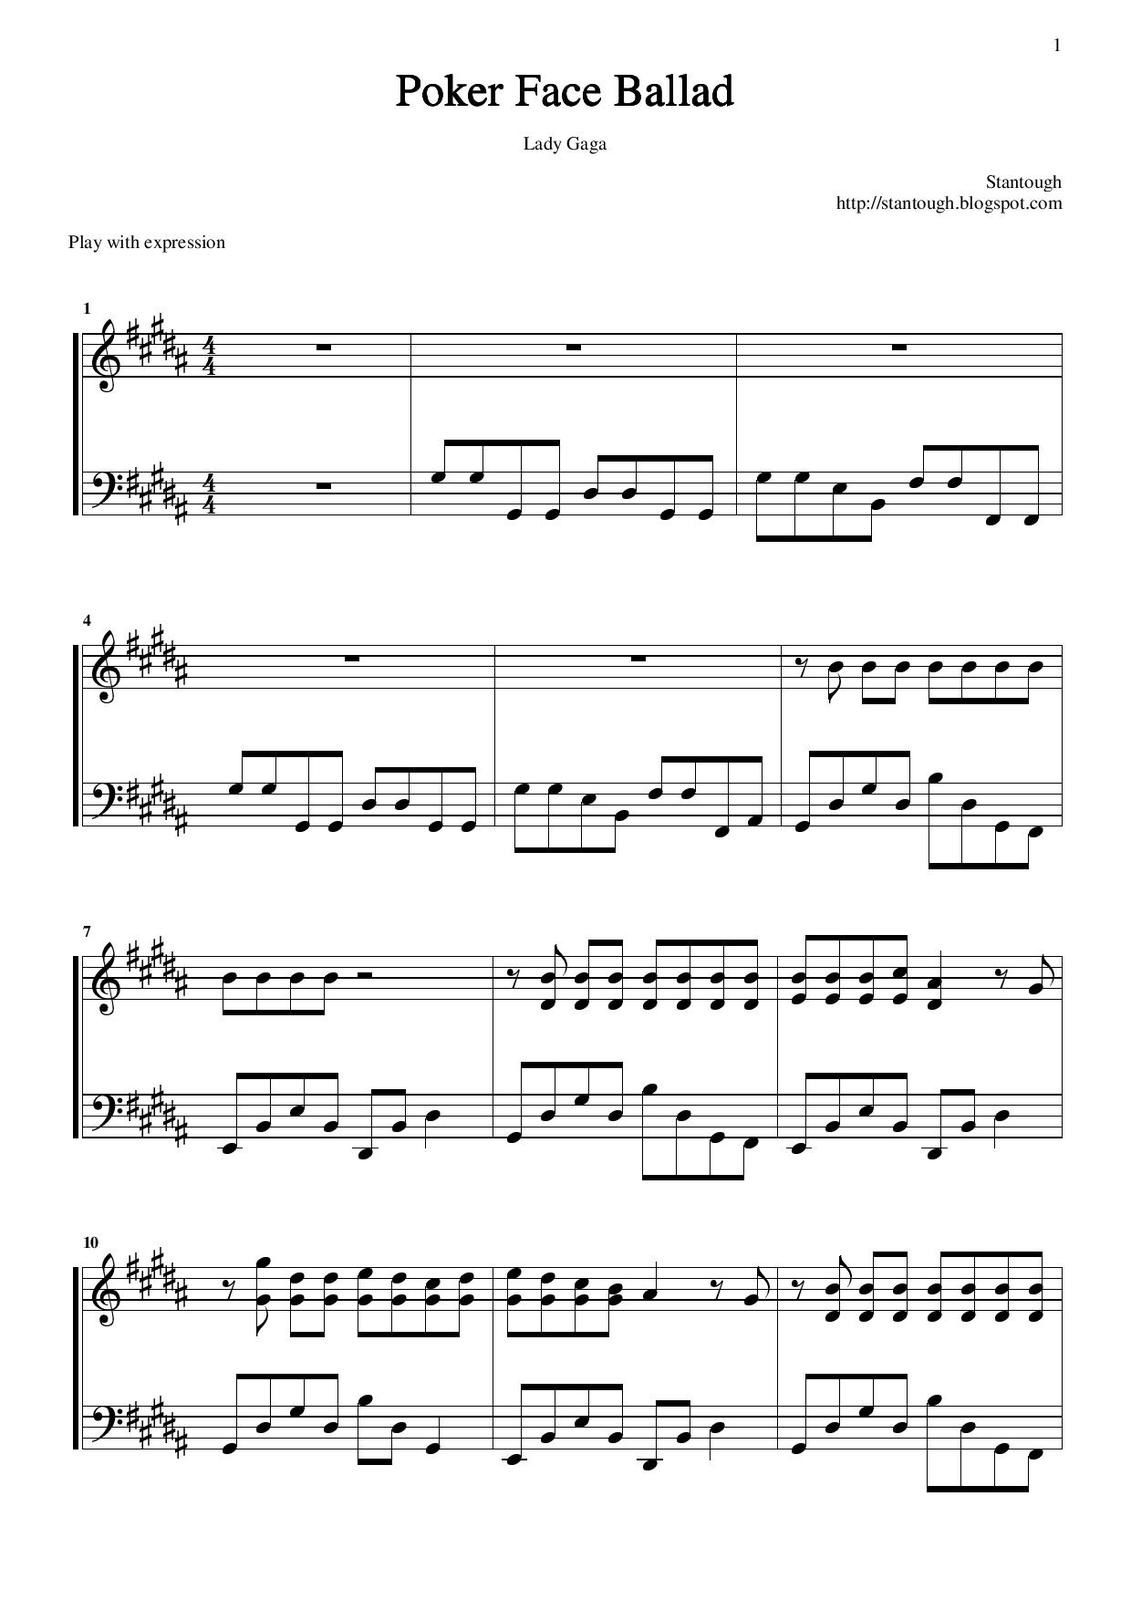 Partitura para Piano "Poker Face" | Lady Gaga - Las Notas De Nana